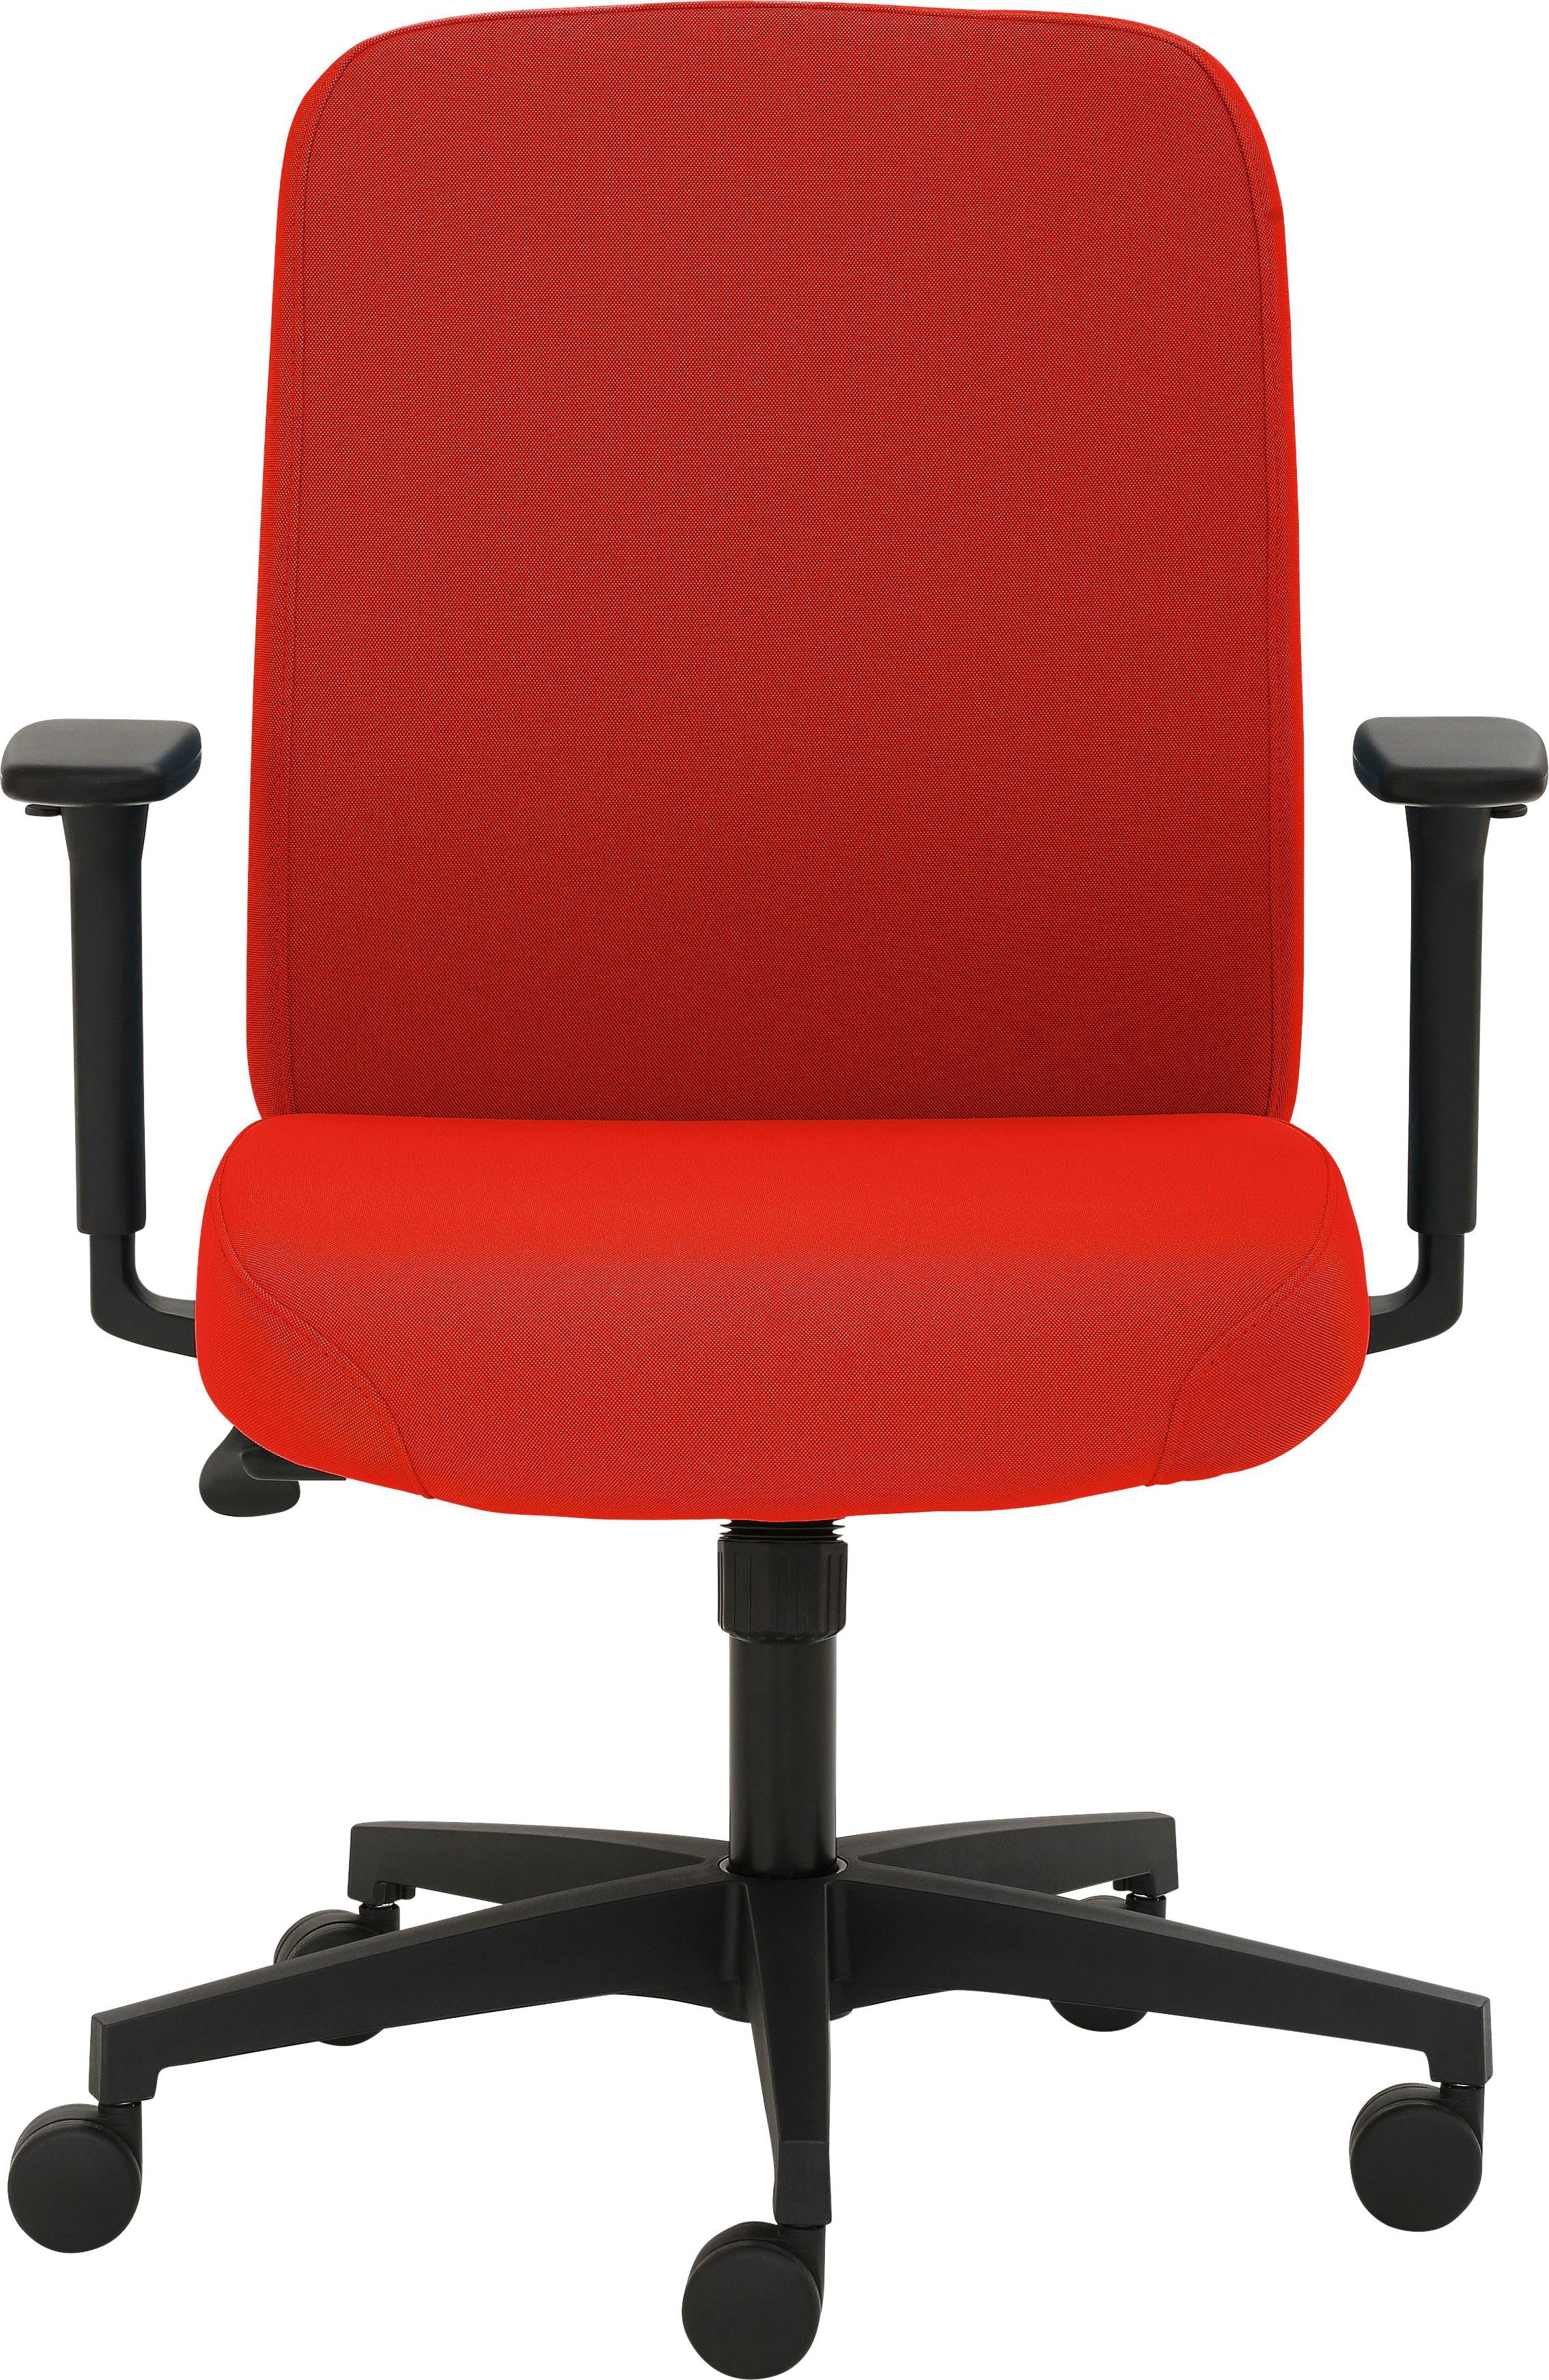 Komfort 2219, extra für GS-zertifiziert, starke Mayer Polsterung extra maximalen gepolsterte an stark Sitzkomfort, für Sitzfläche ein Maximum Drehstuhl Sitzmöbel